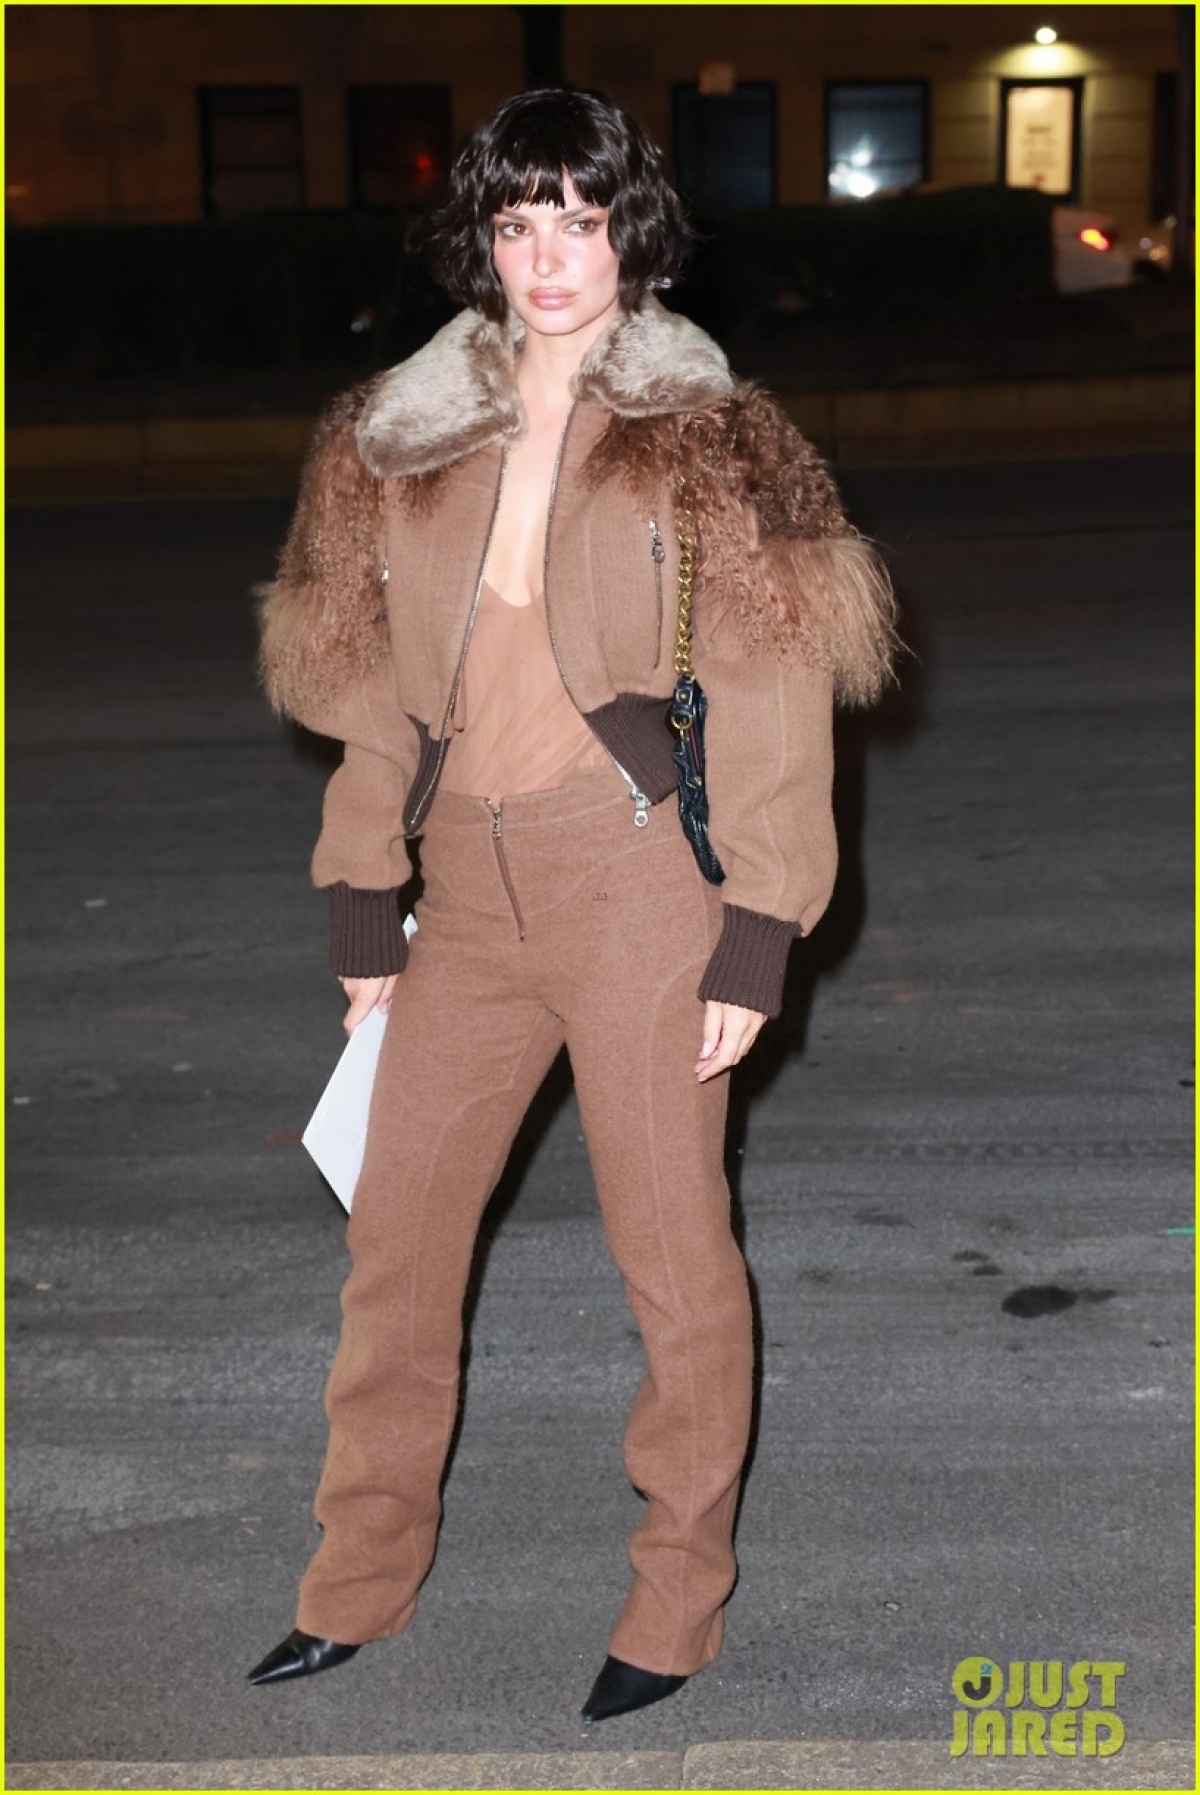 Siêu mẫu Emily Ratajkowski cắt tóc ngắn, tái xuất khác lạ trong show thời trang - Ảnh 8.